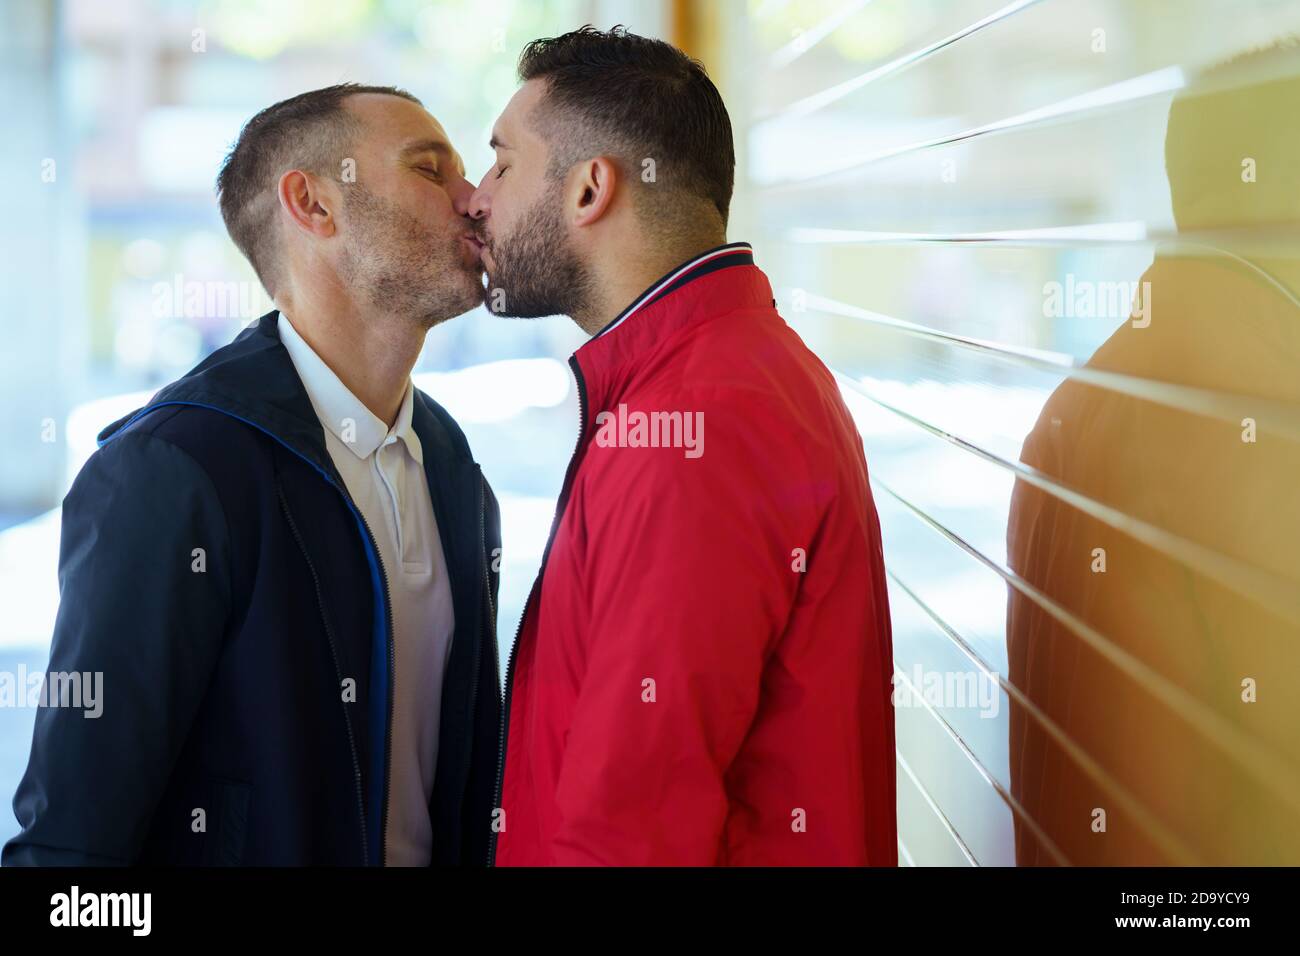 Gay kiss immagini e fotografie stock ad alta risoluzione - Alamy